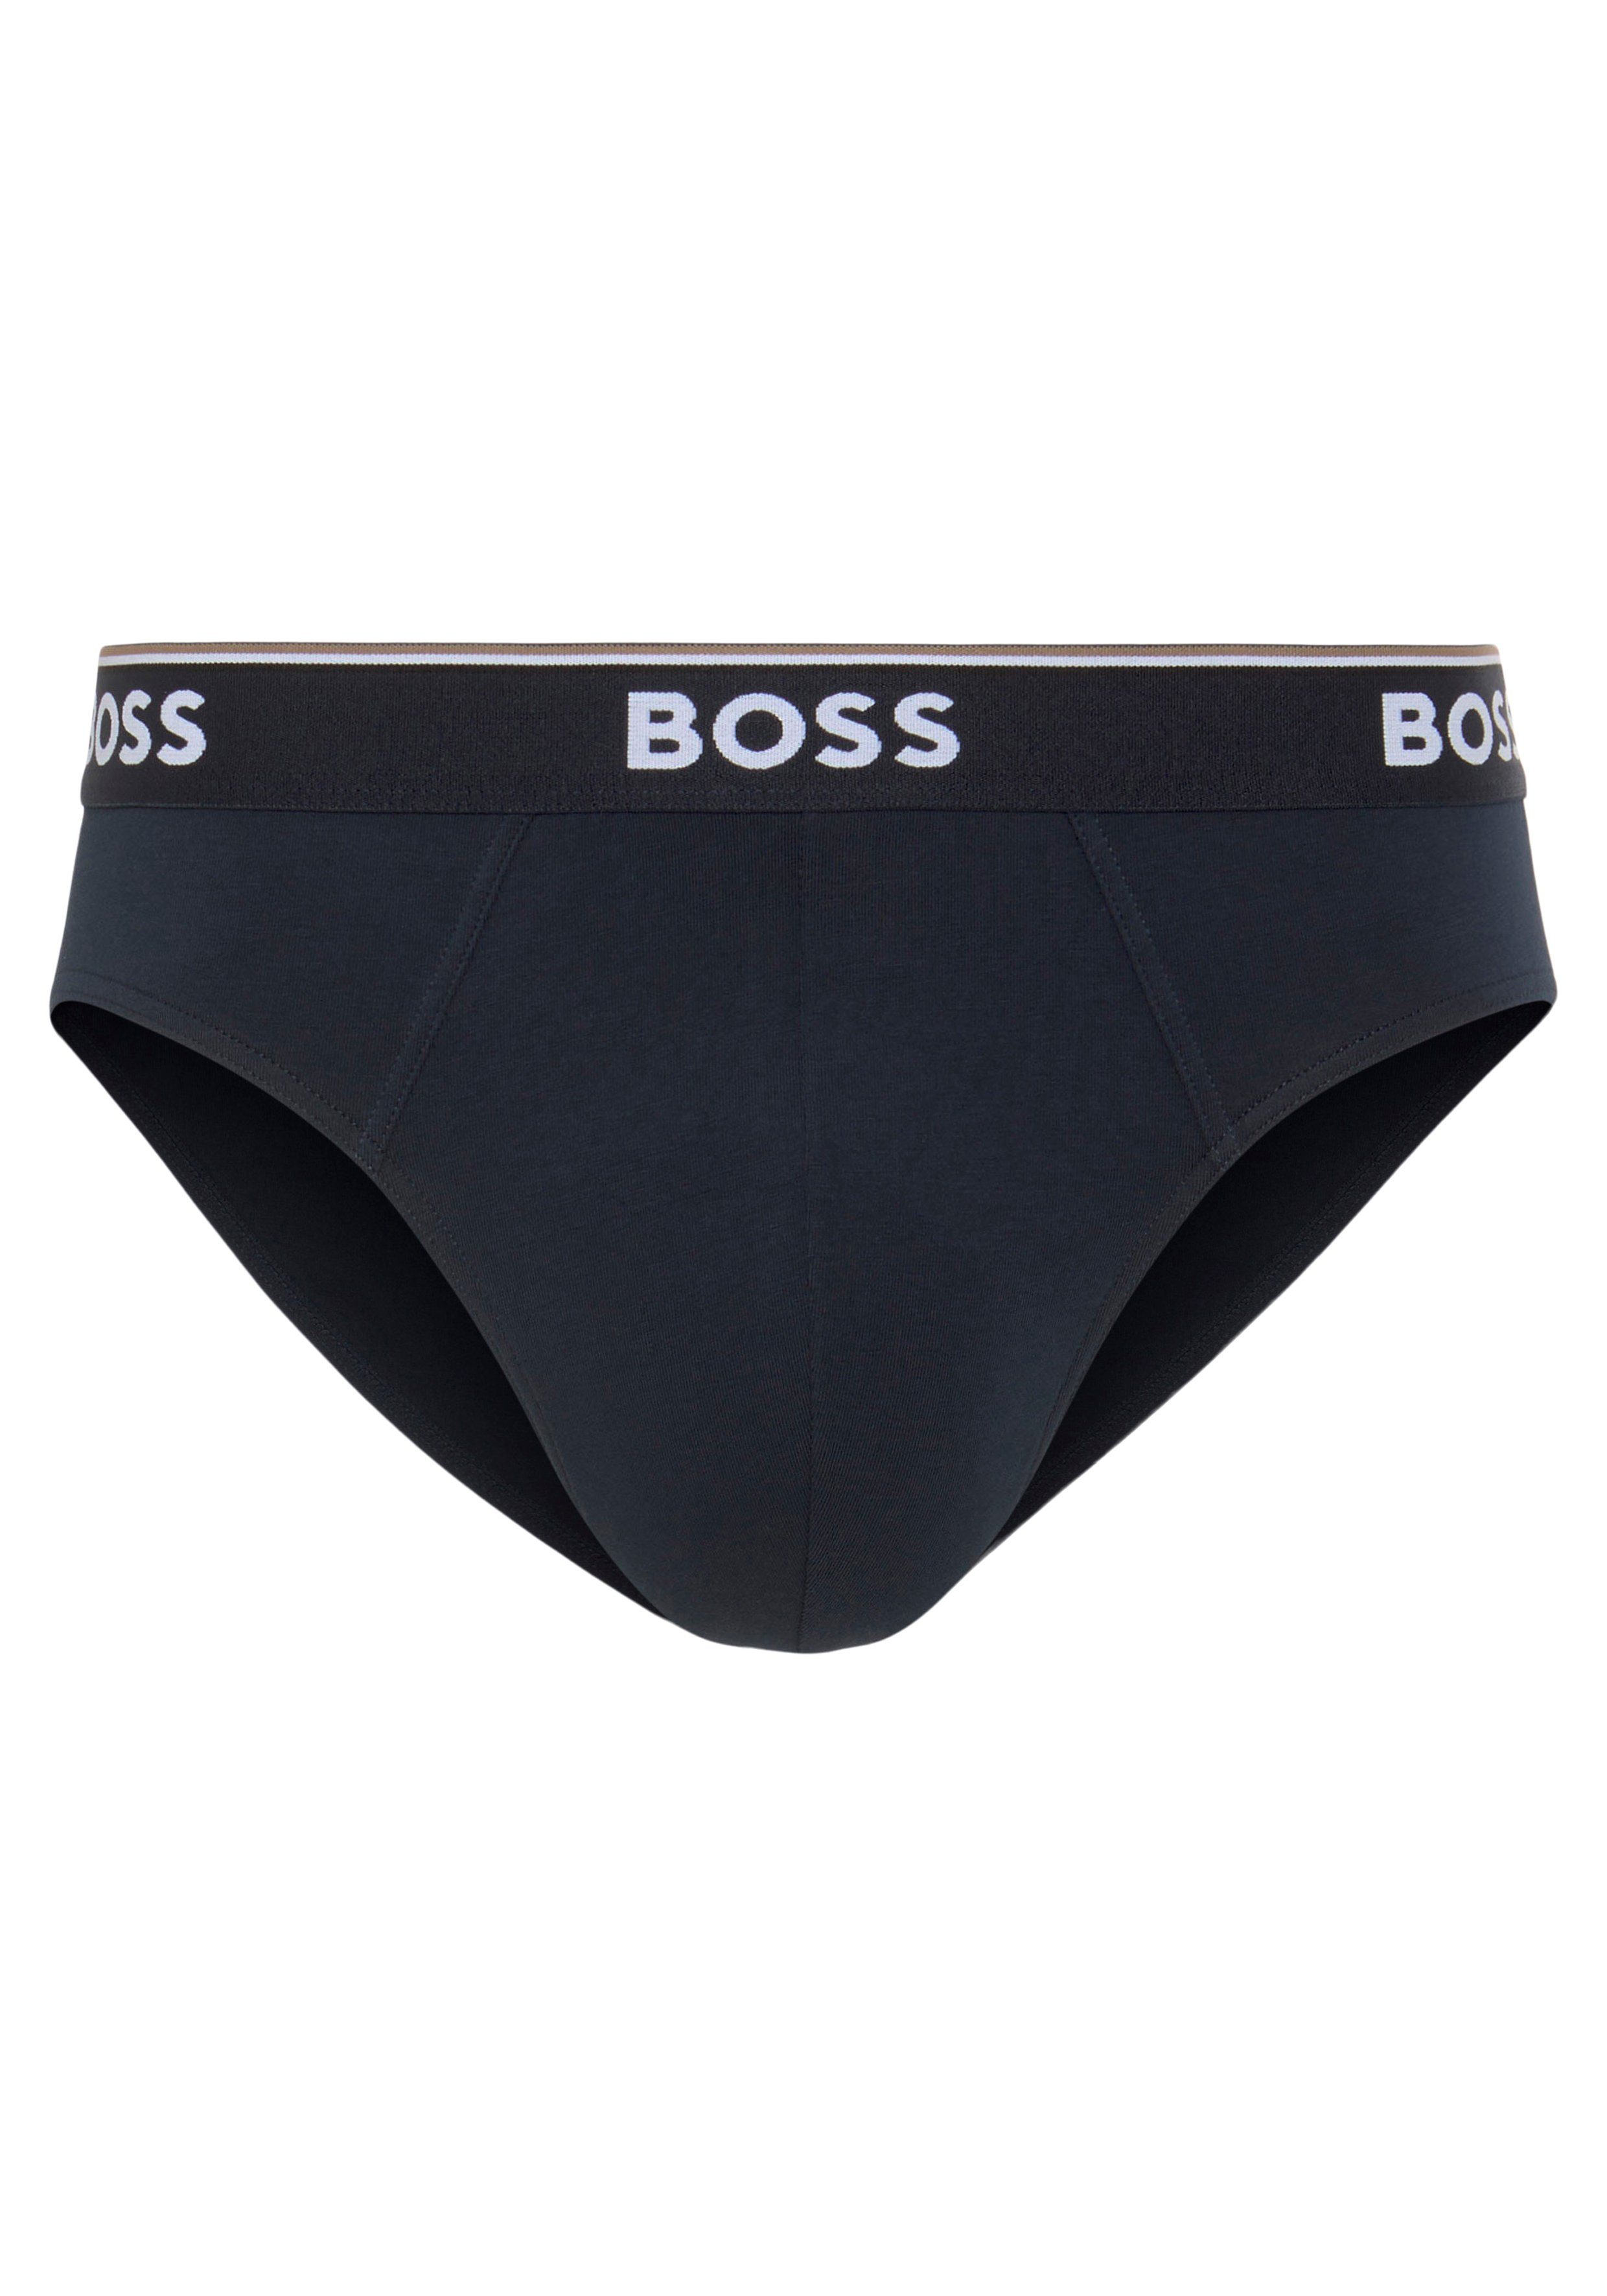 BOSS Slip Brief 3P mit Pack) black olive BOSS dem Logo / 964 (Packung, / Bund 3er auf Power navy 3-St